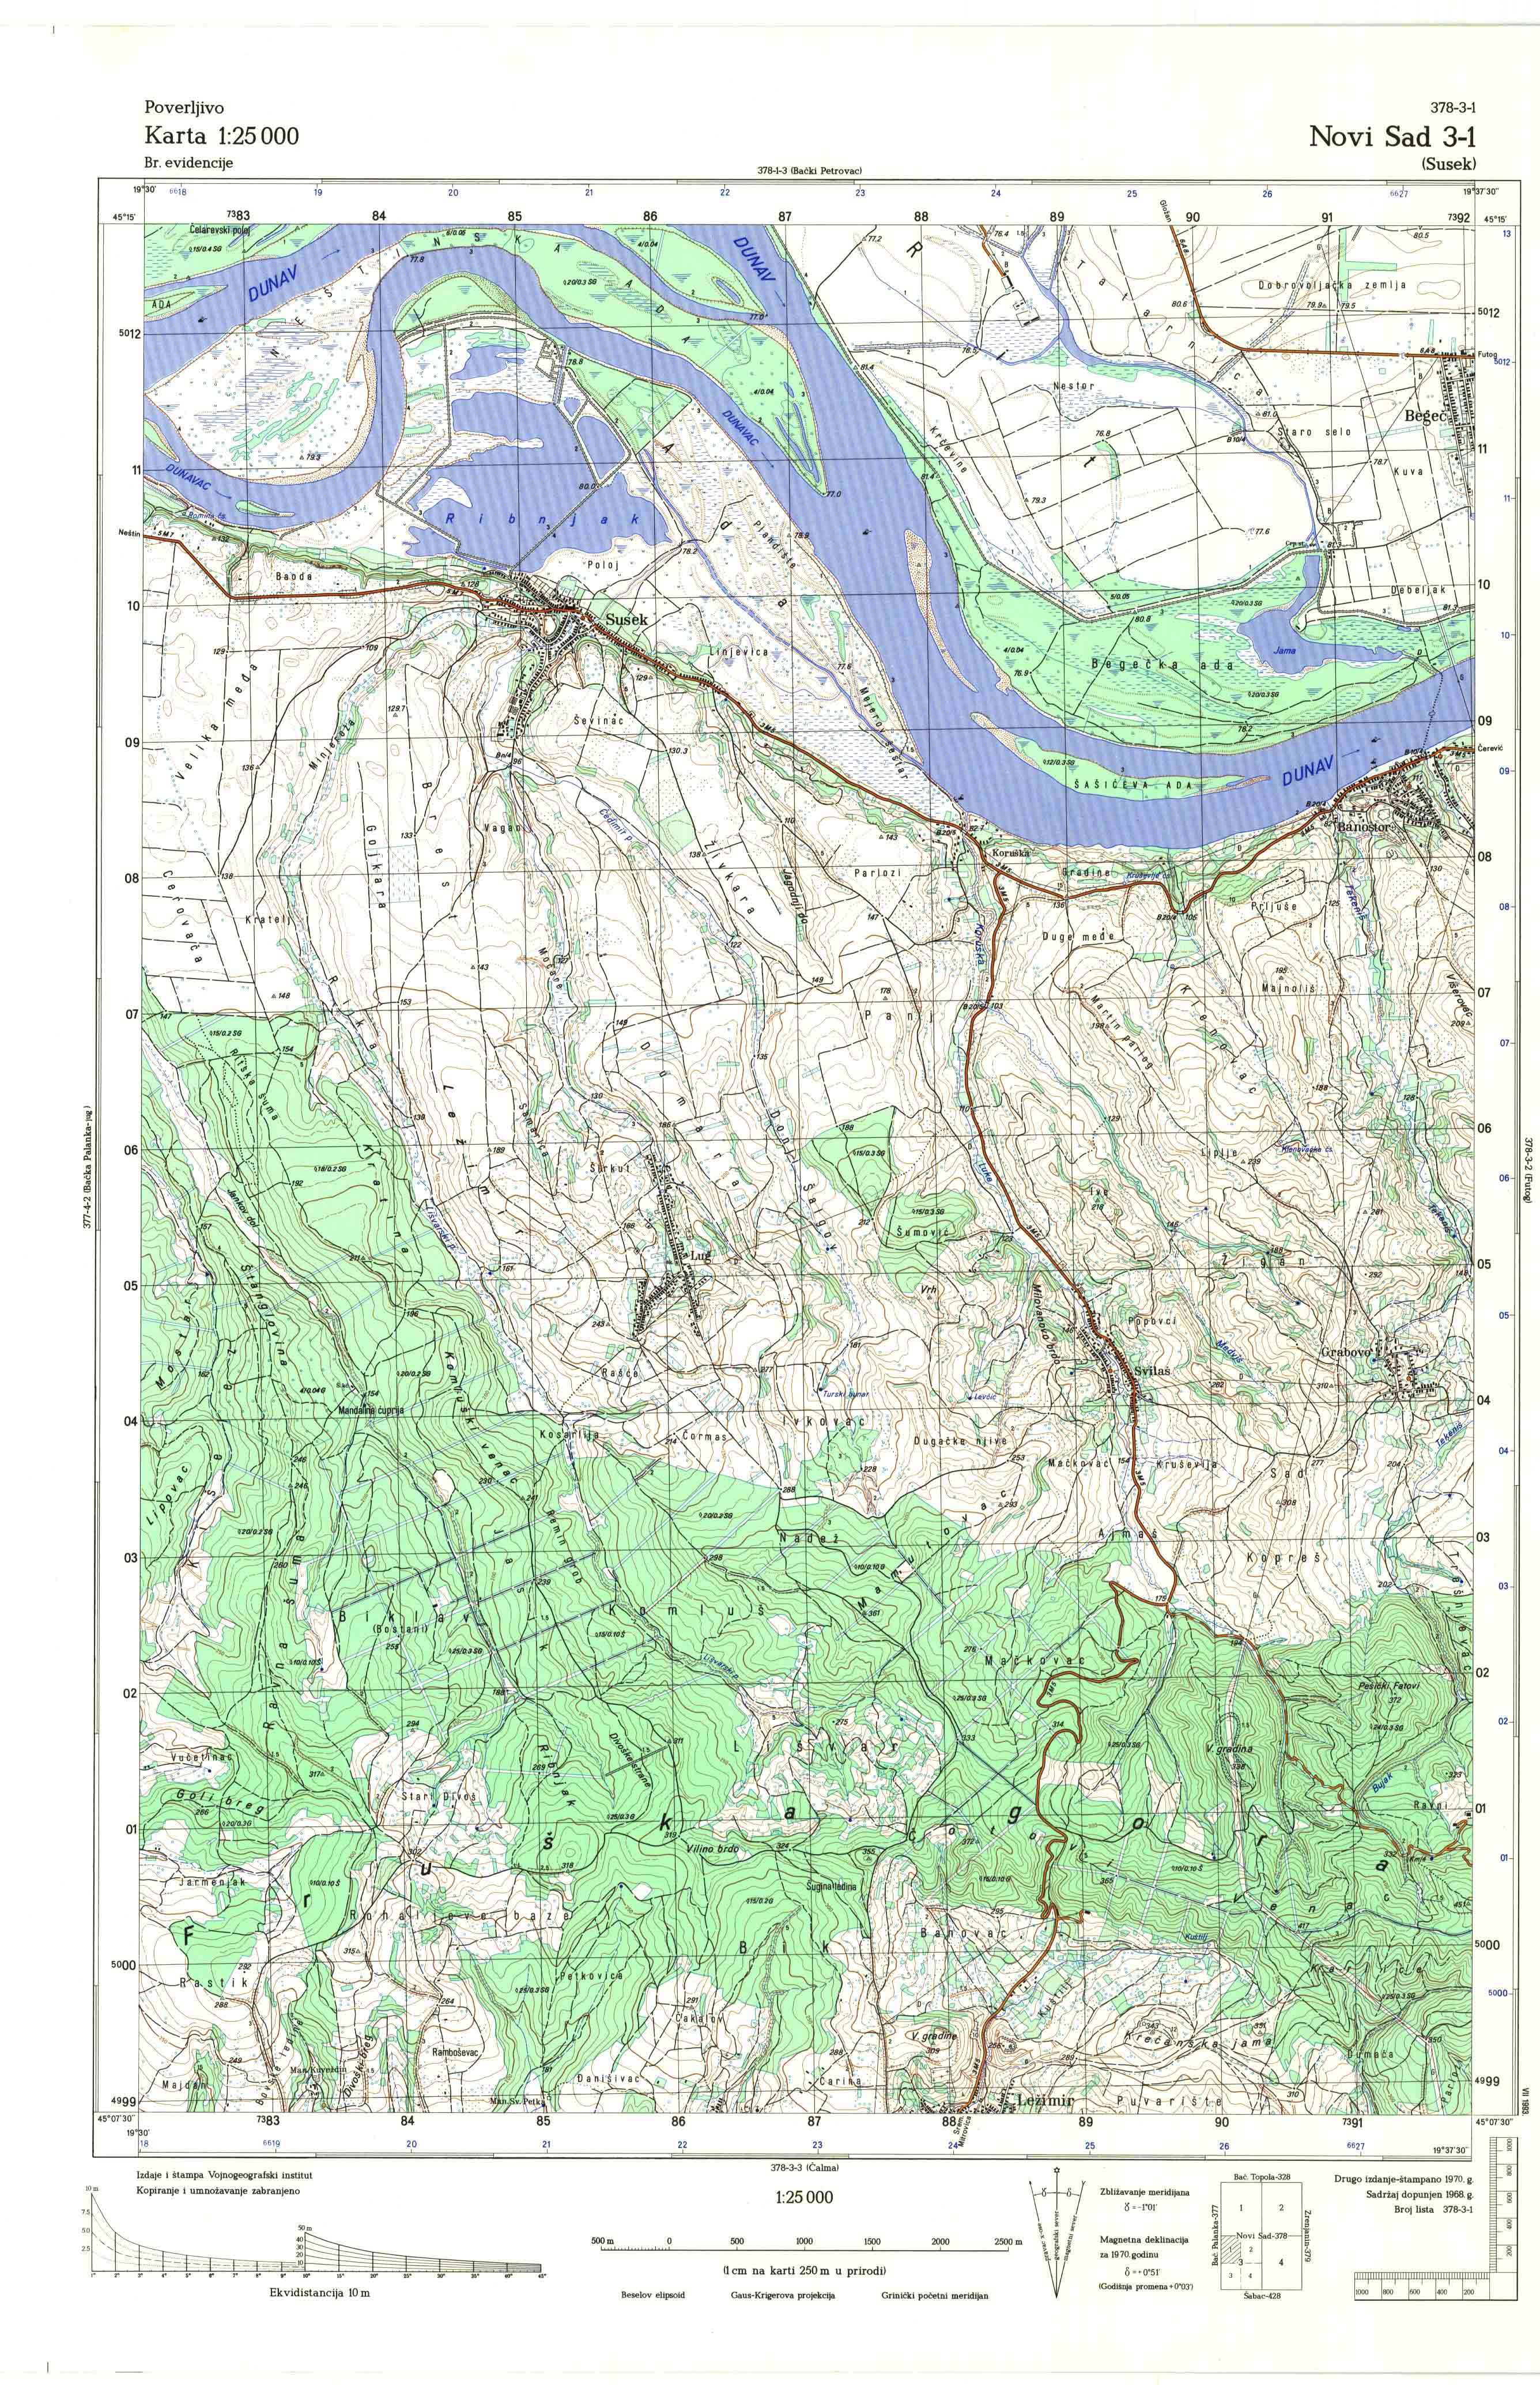  topografska karta srbije 25000 JNA  Novi Sad